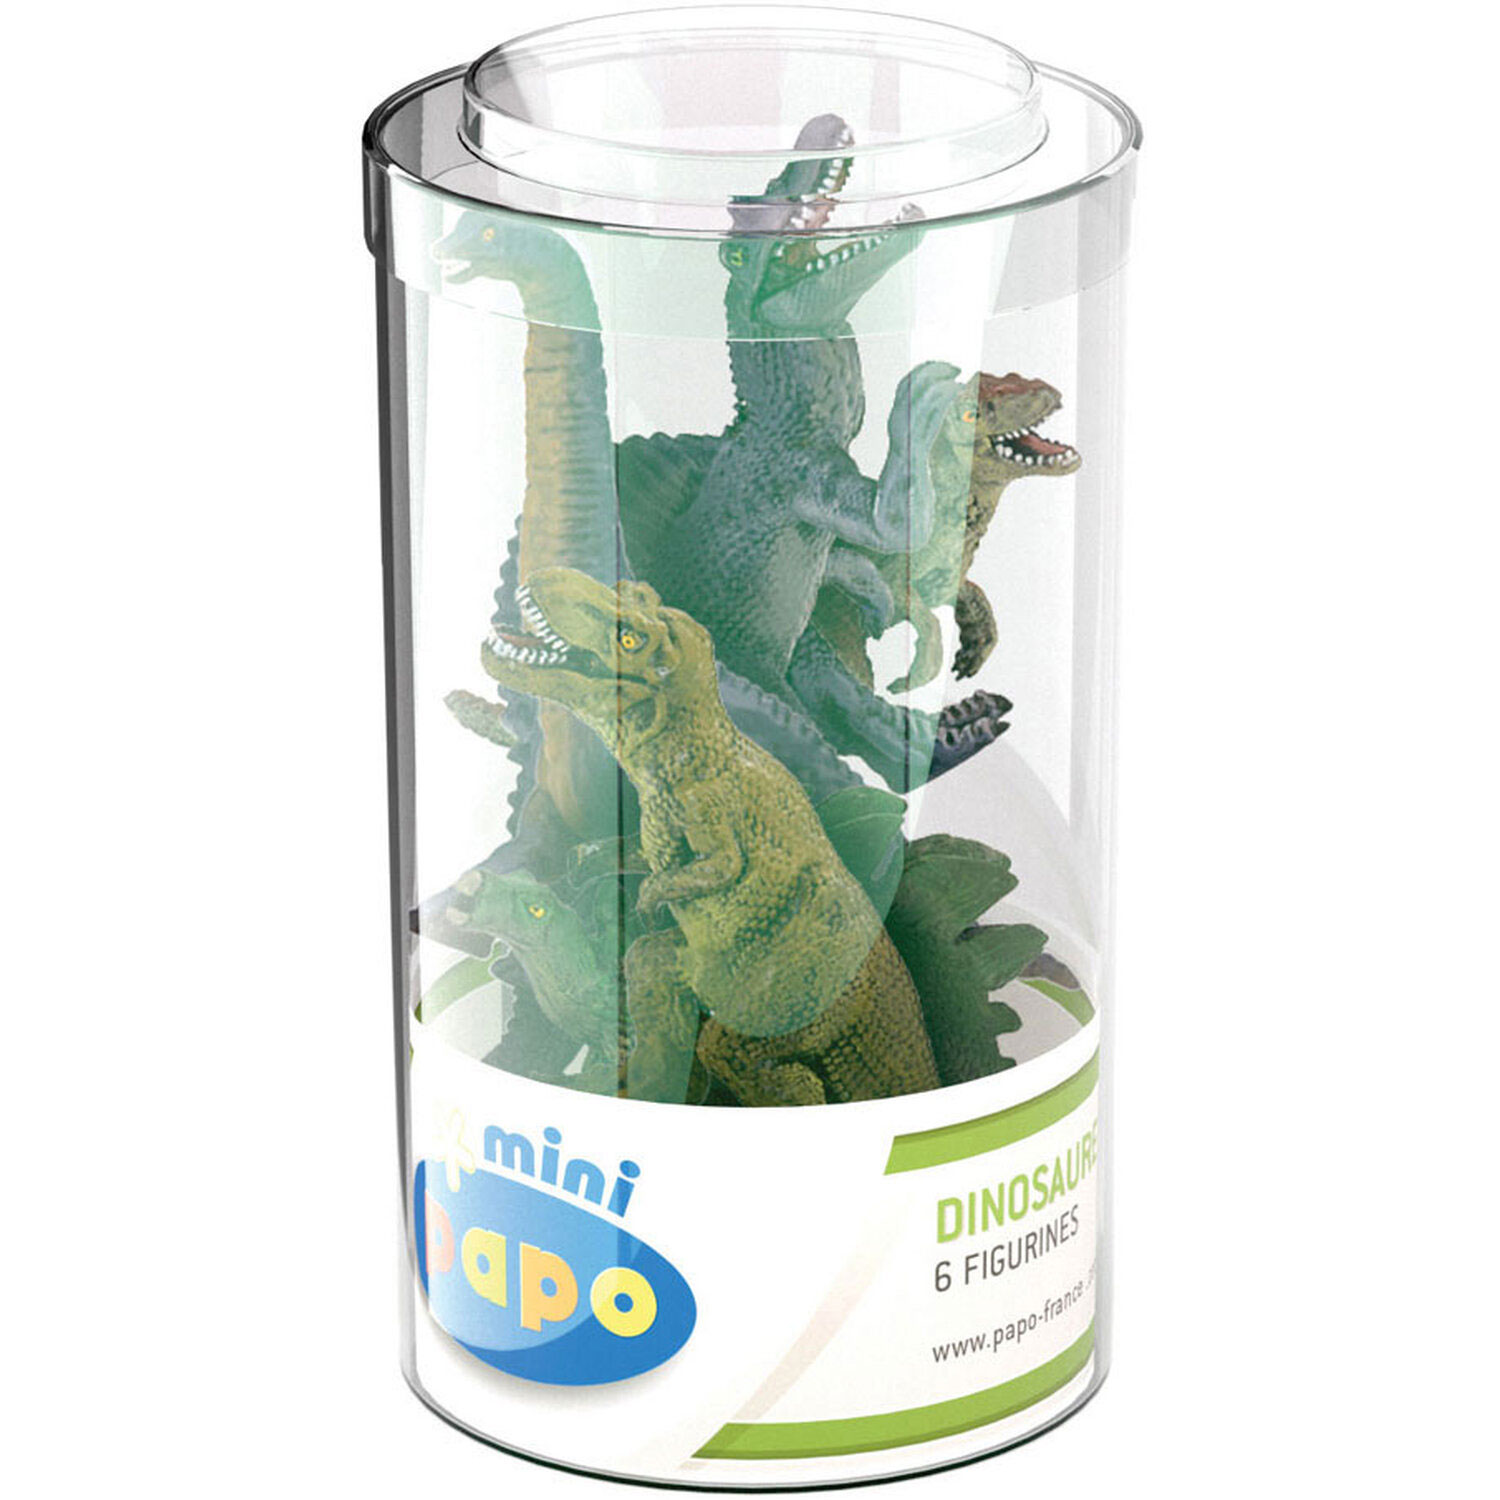 Papo Mini Plus Dinosaurs Set 1 - 33018